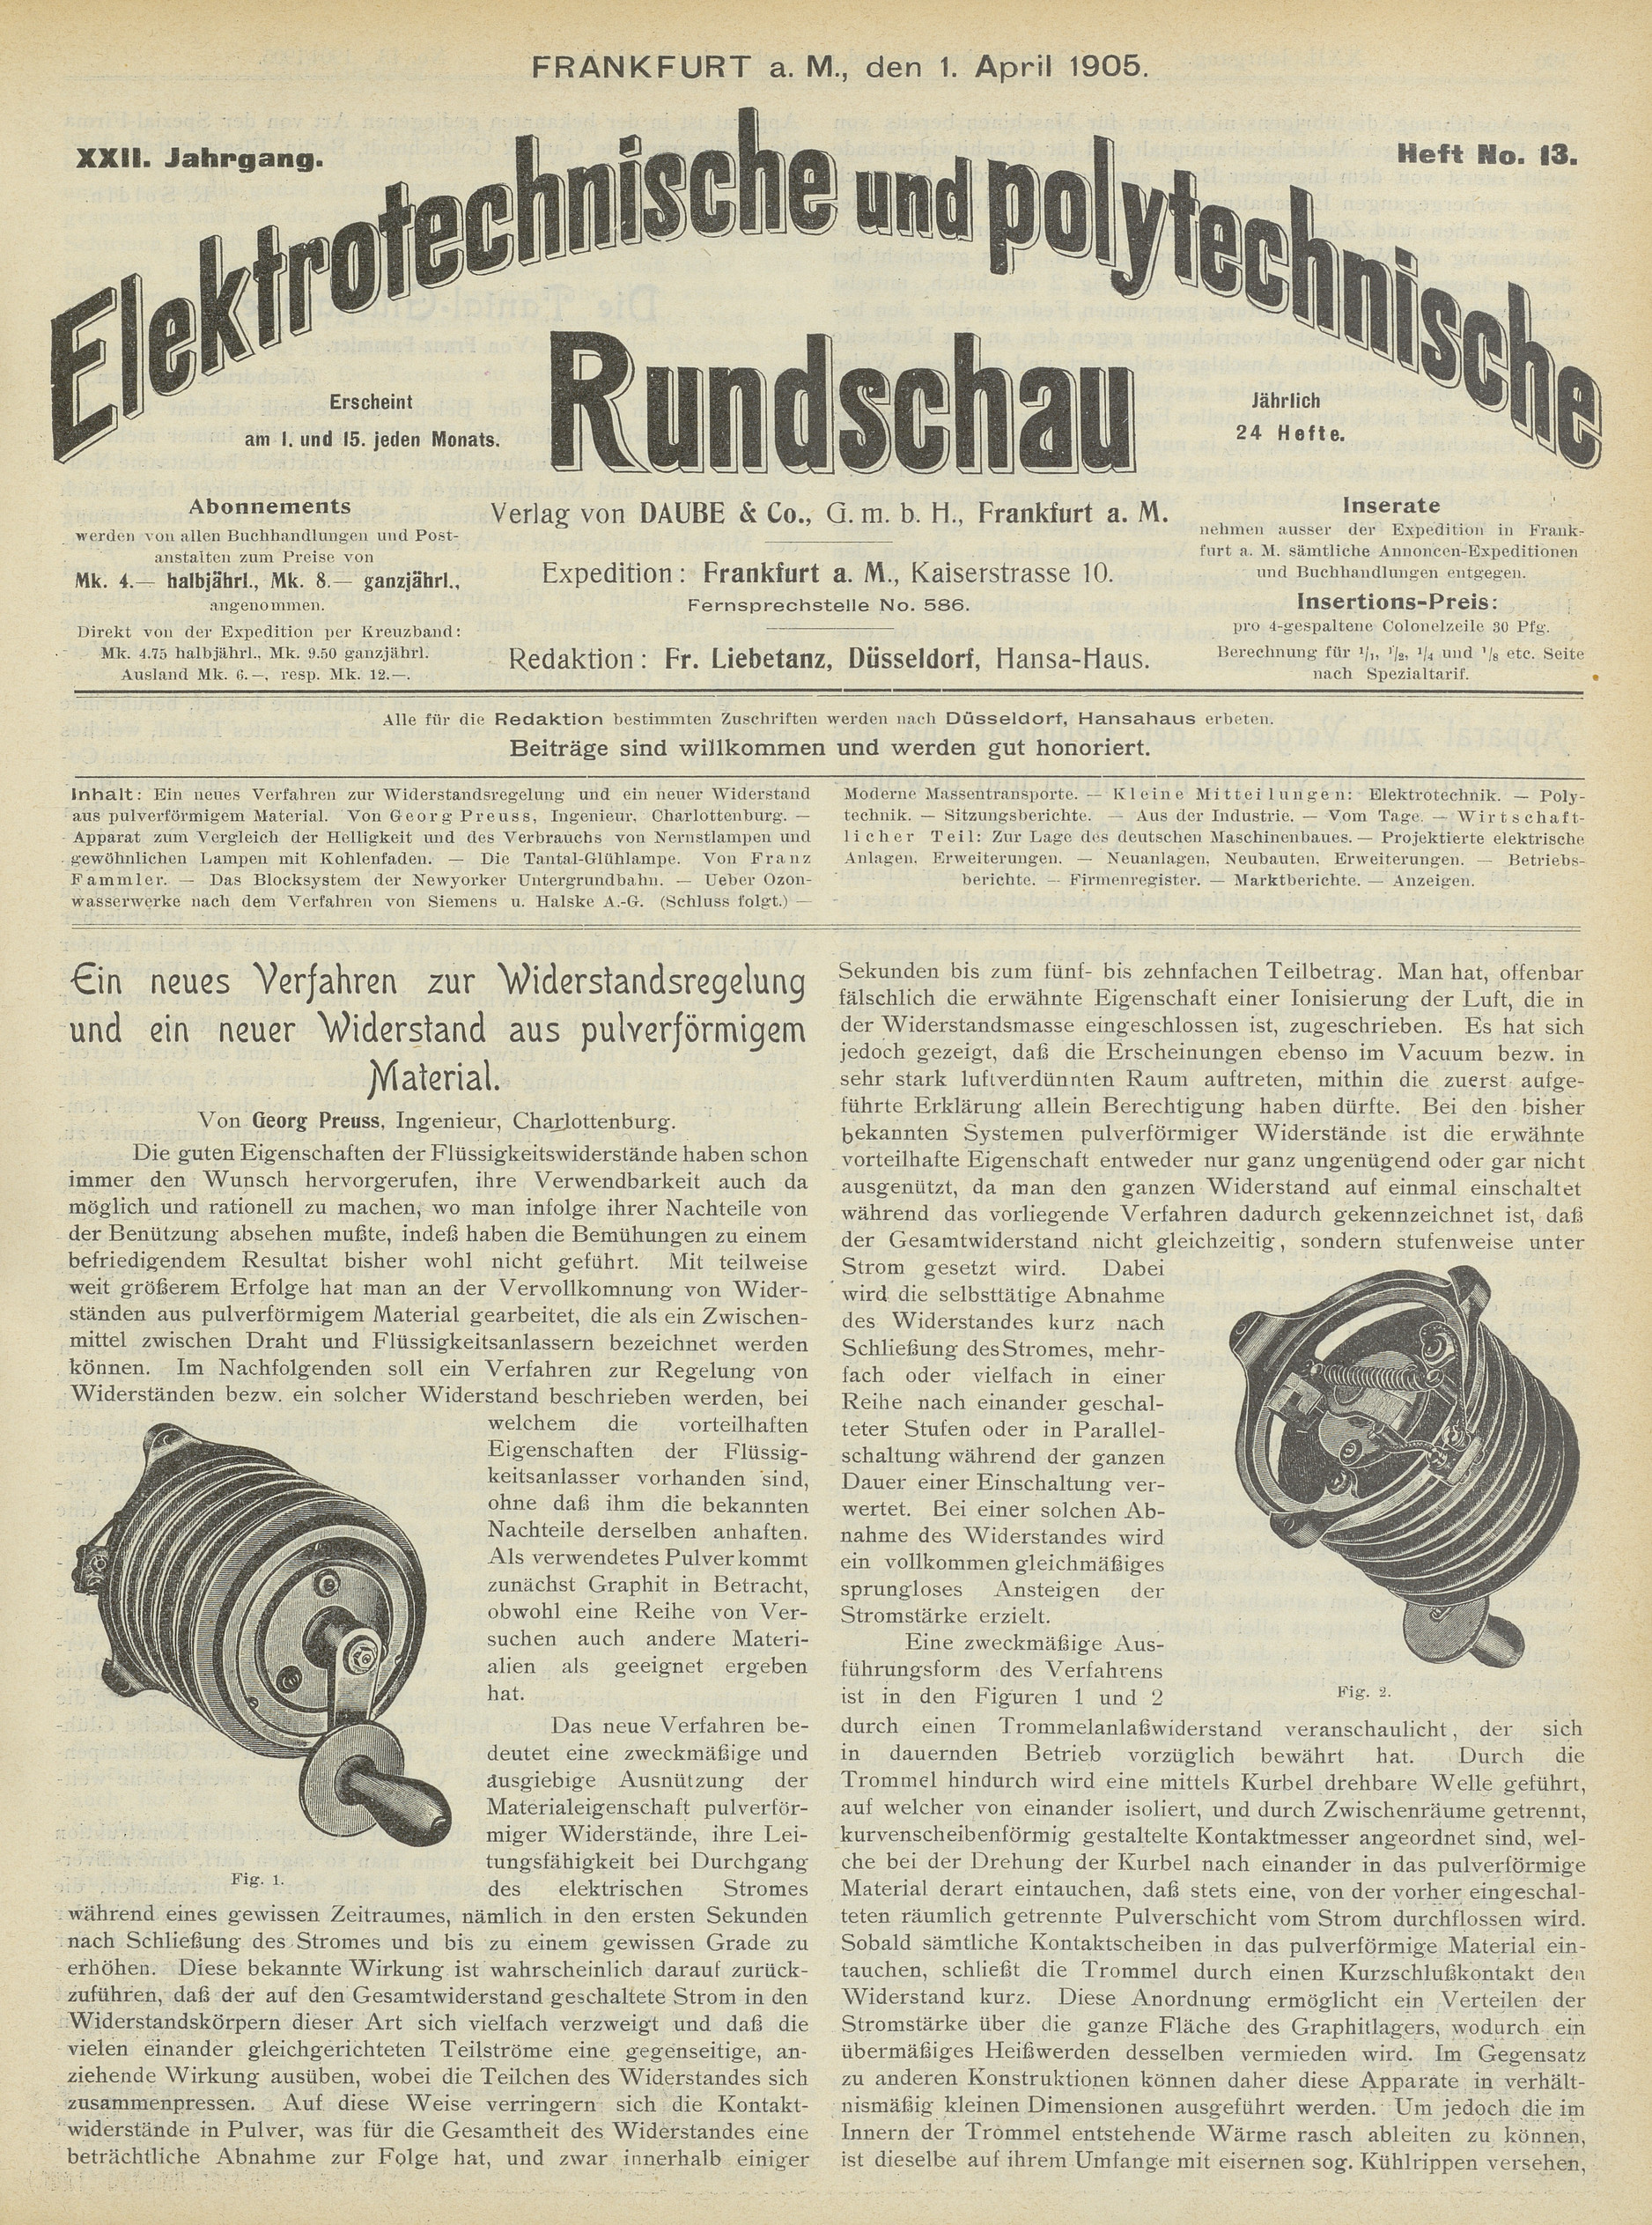 Elektrotechnische und polytechnische Rundschau, XXII. Jahrgang, Heft No. 13